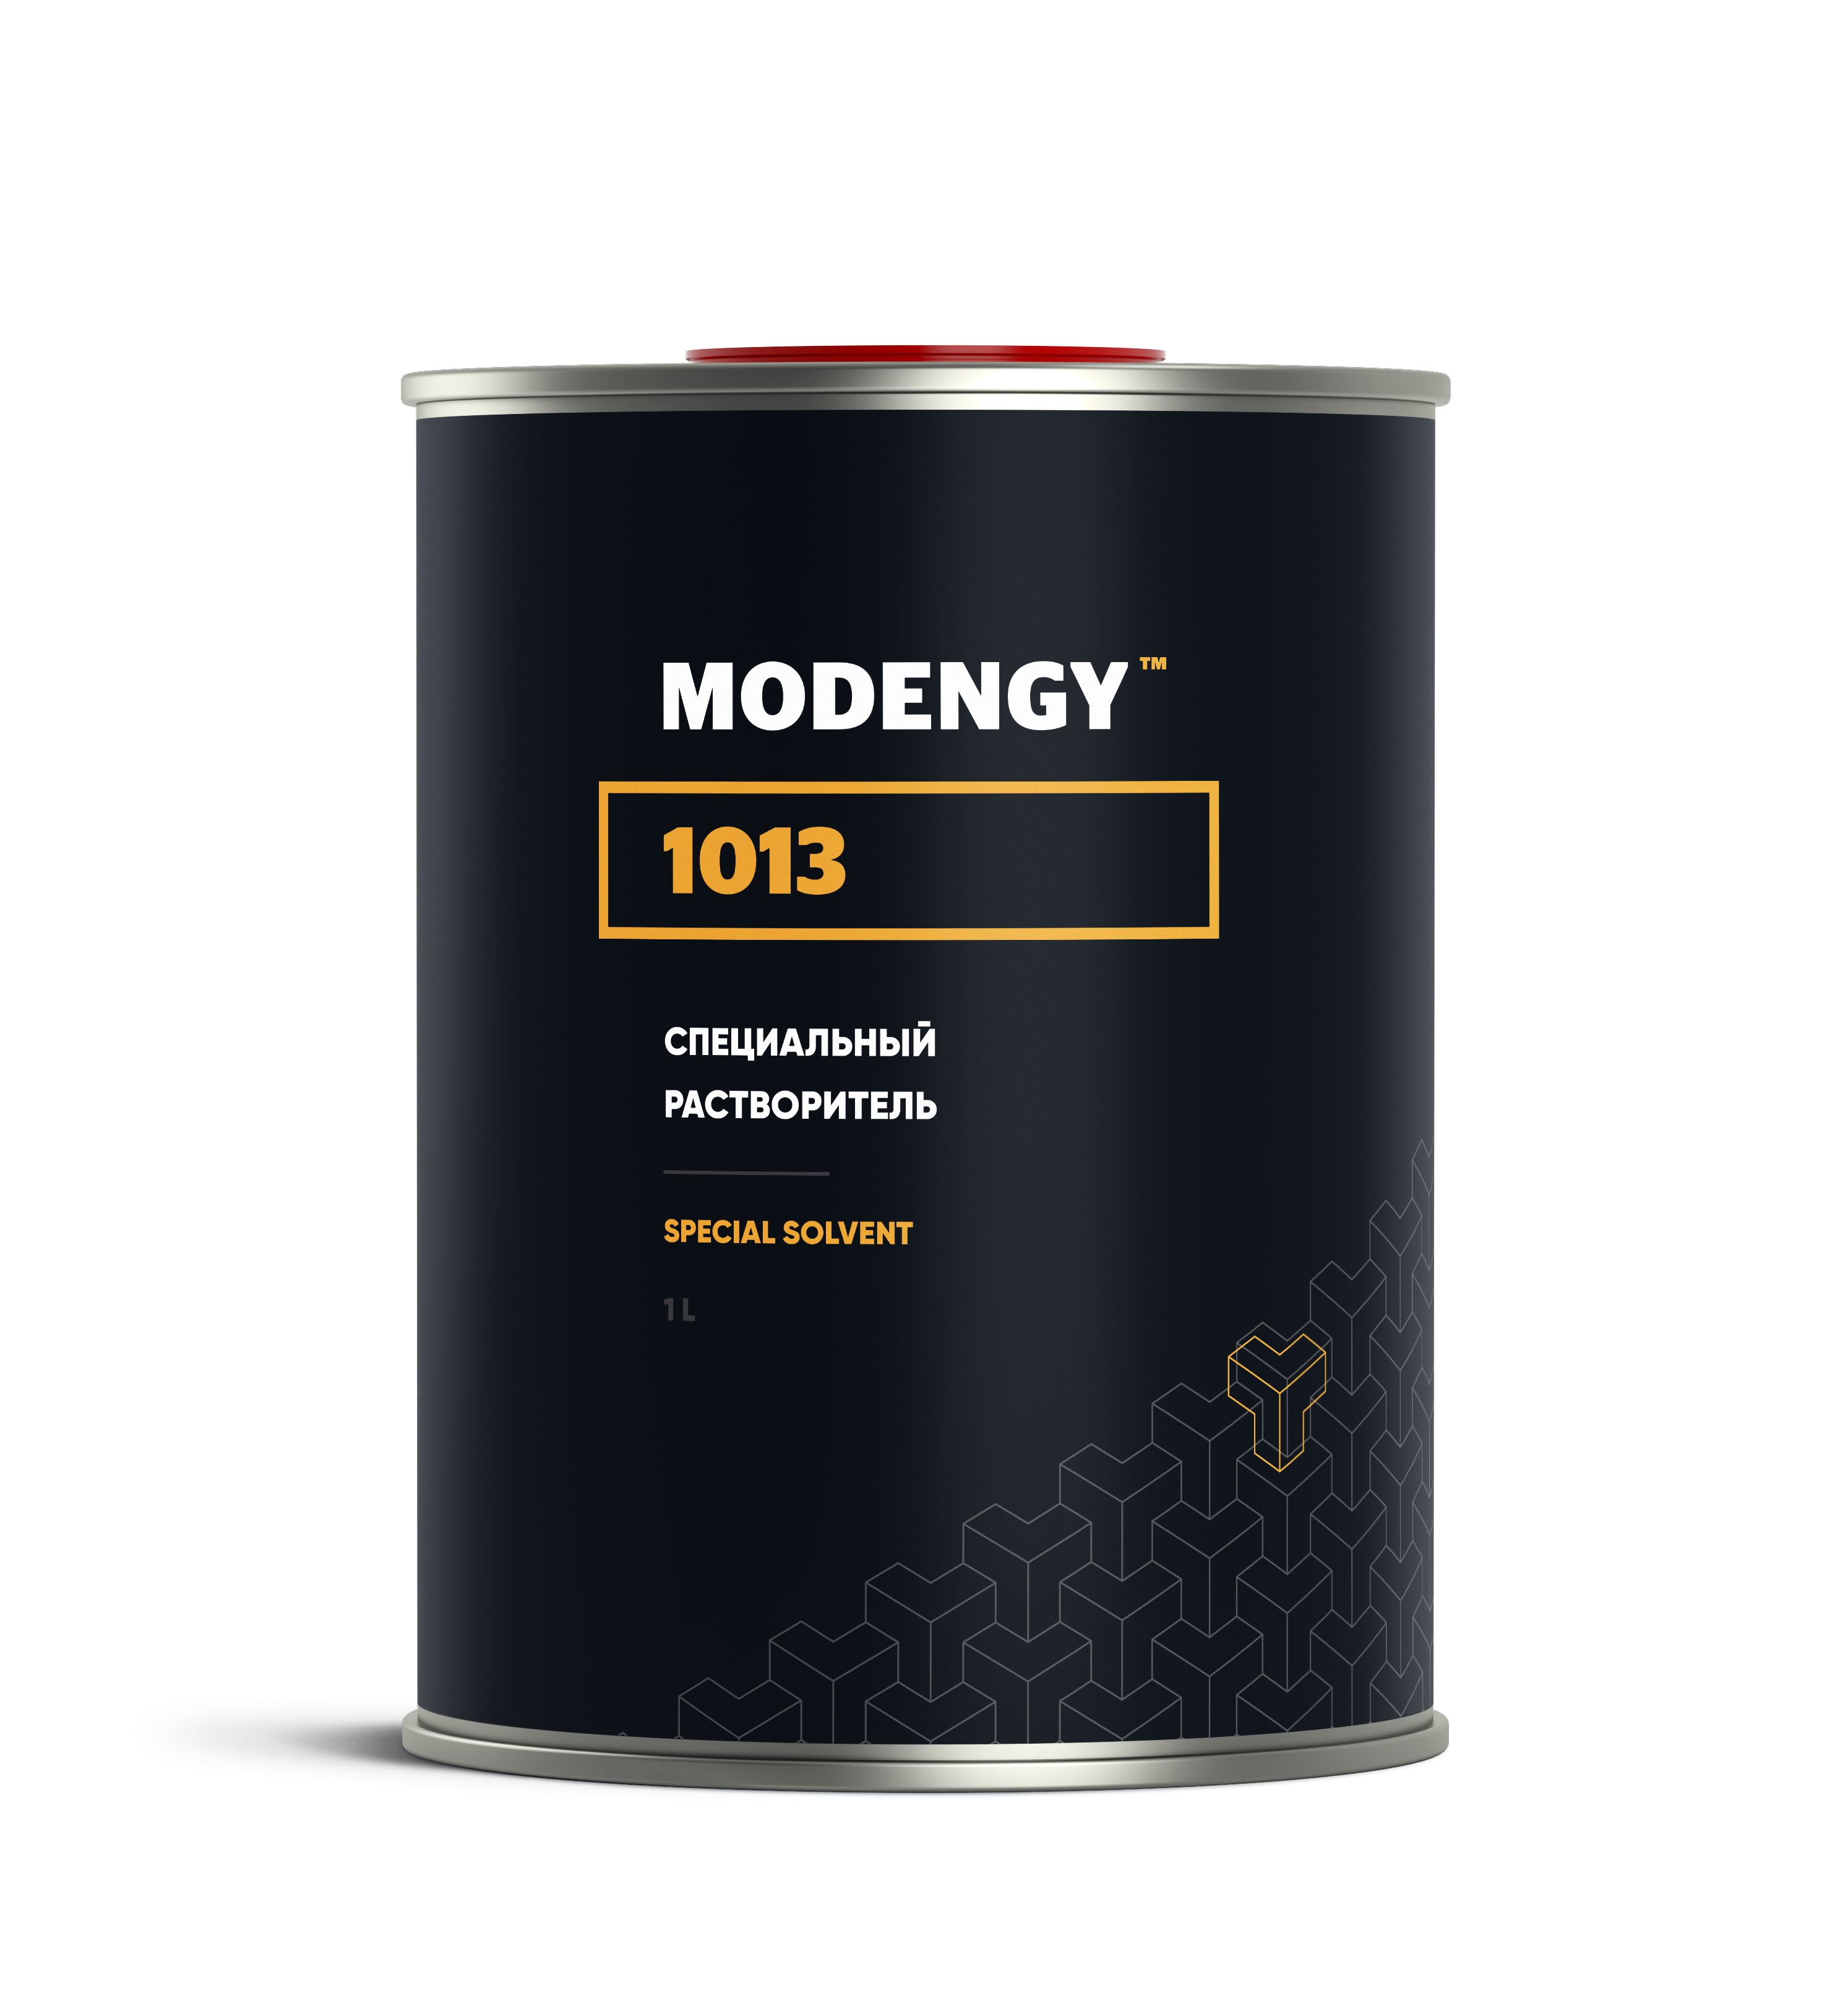 Специальный растворитель MODENGY 1013 (1 л) специальный растворитель modengy 1013 1 л